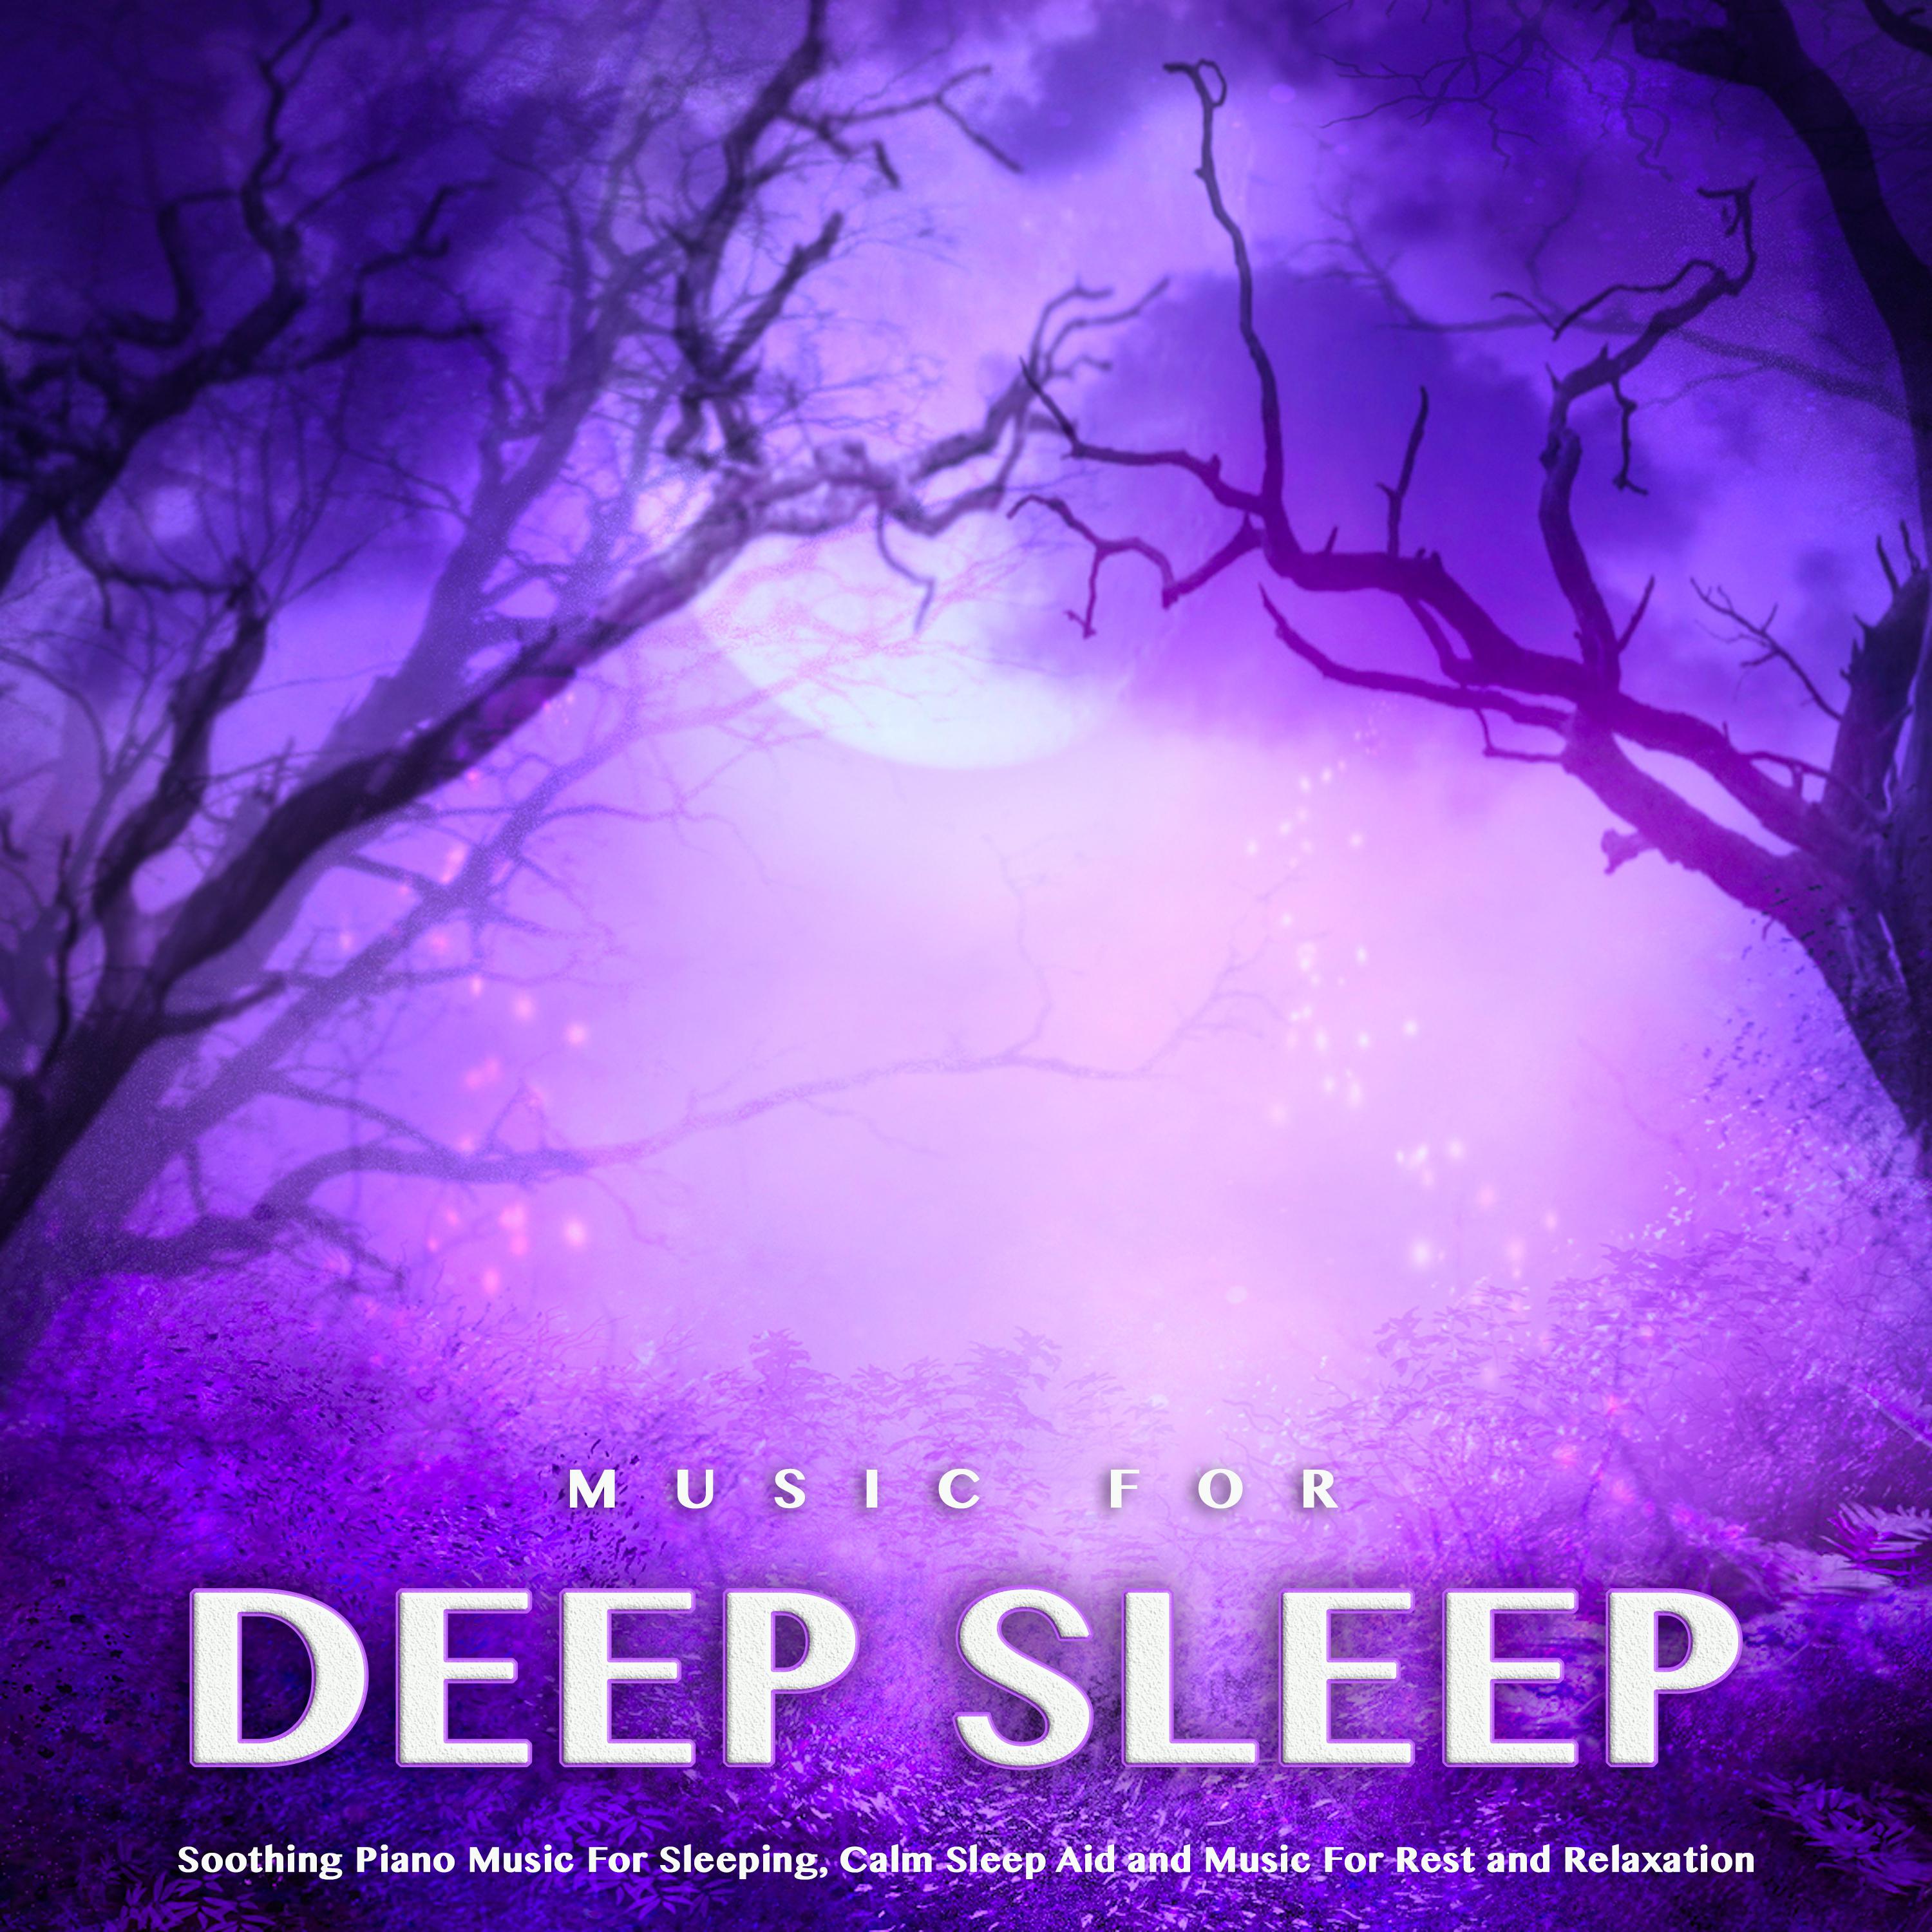 Calm Sleep Music For Deep Sleep